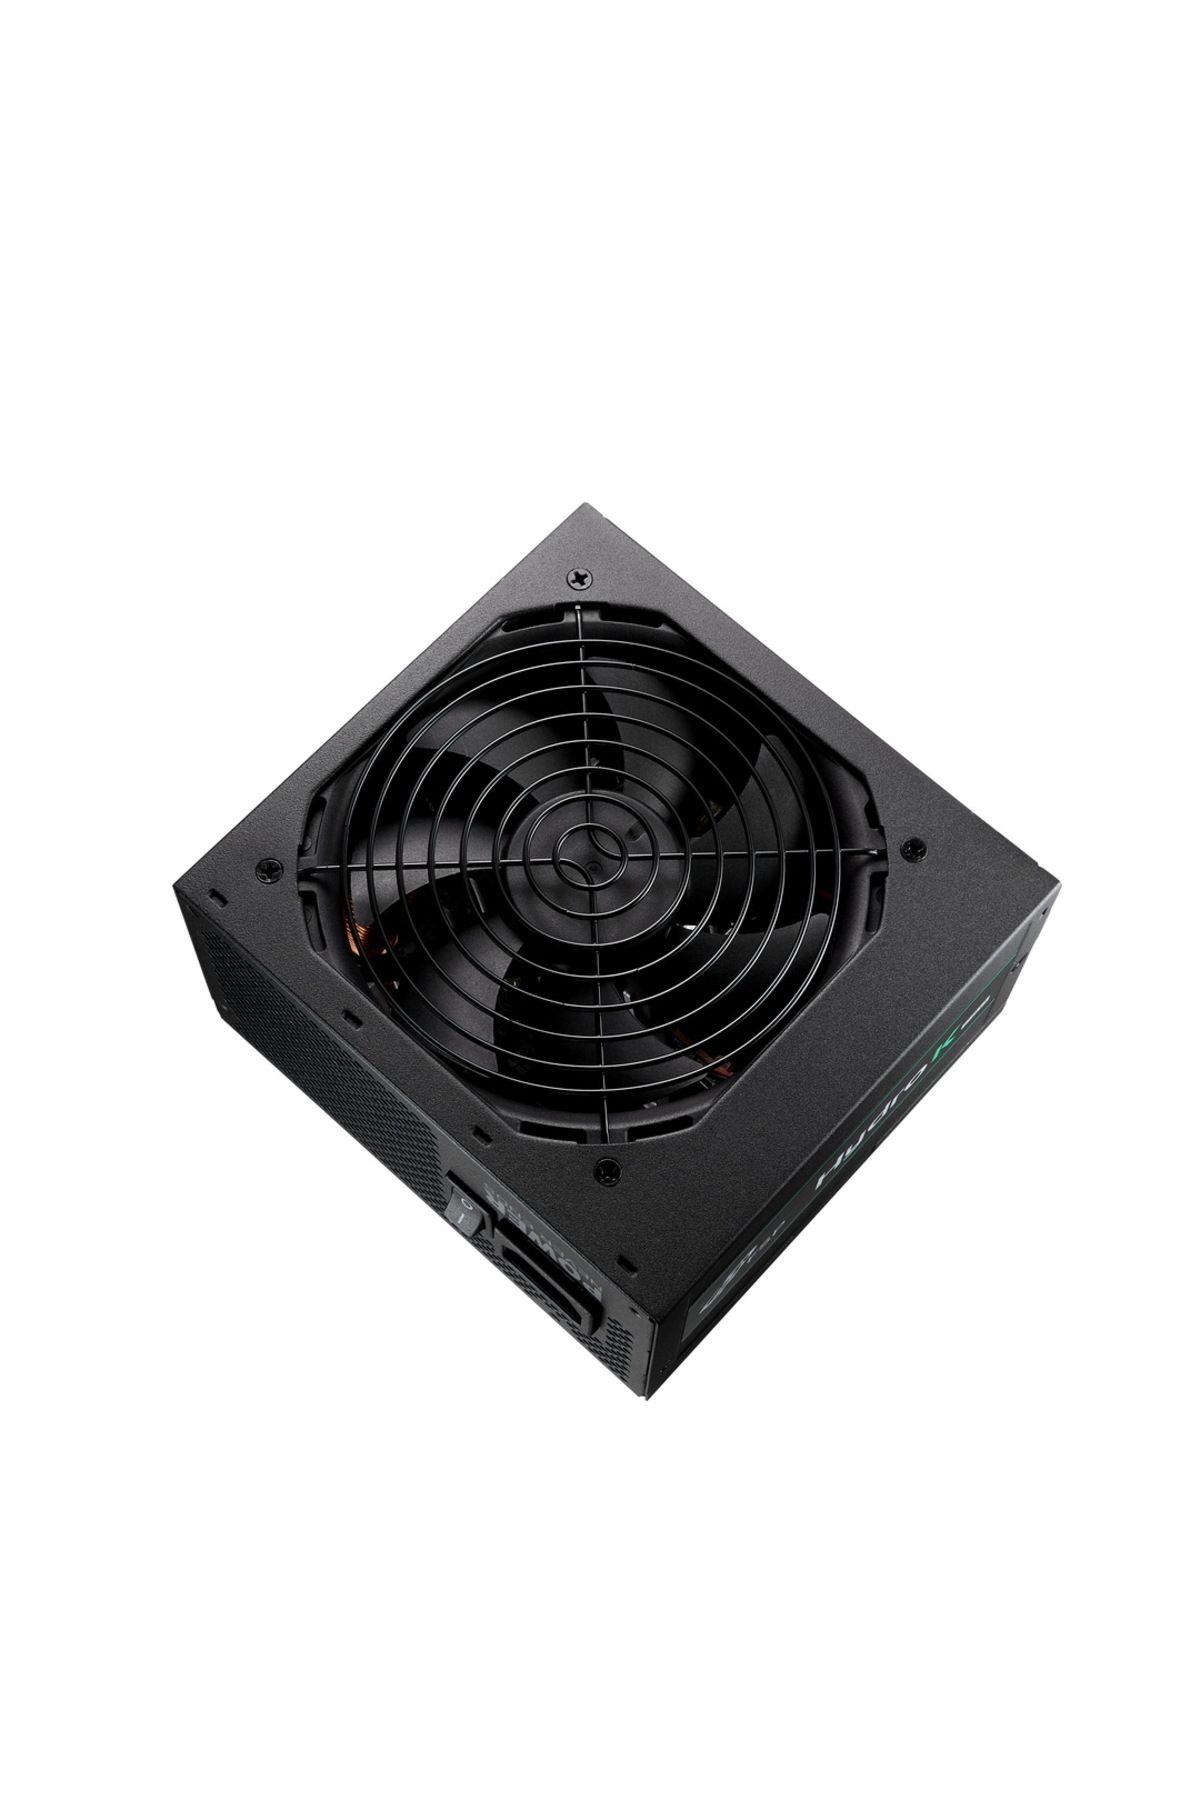 FSP HD2-750 750W 80+Bronze 12cm Fan Power Supply